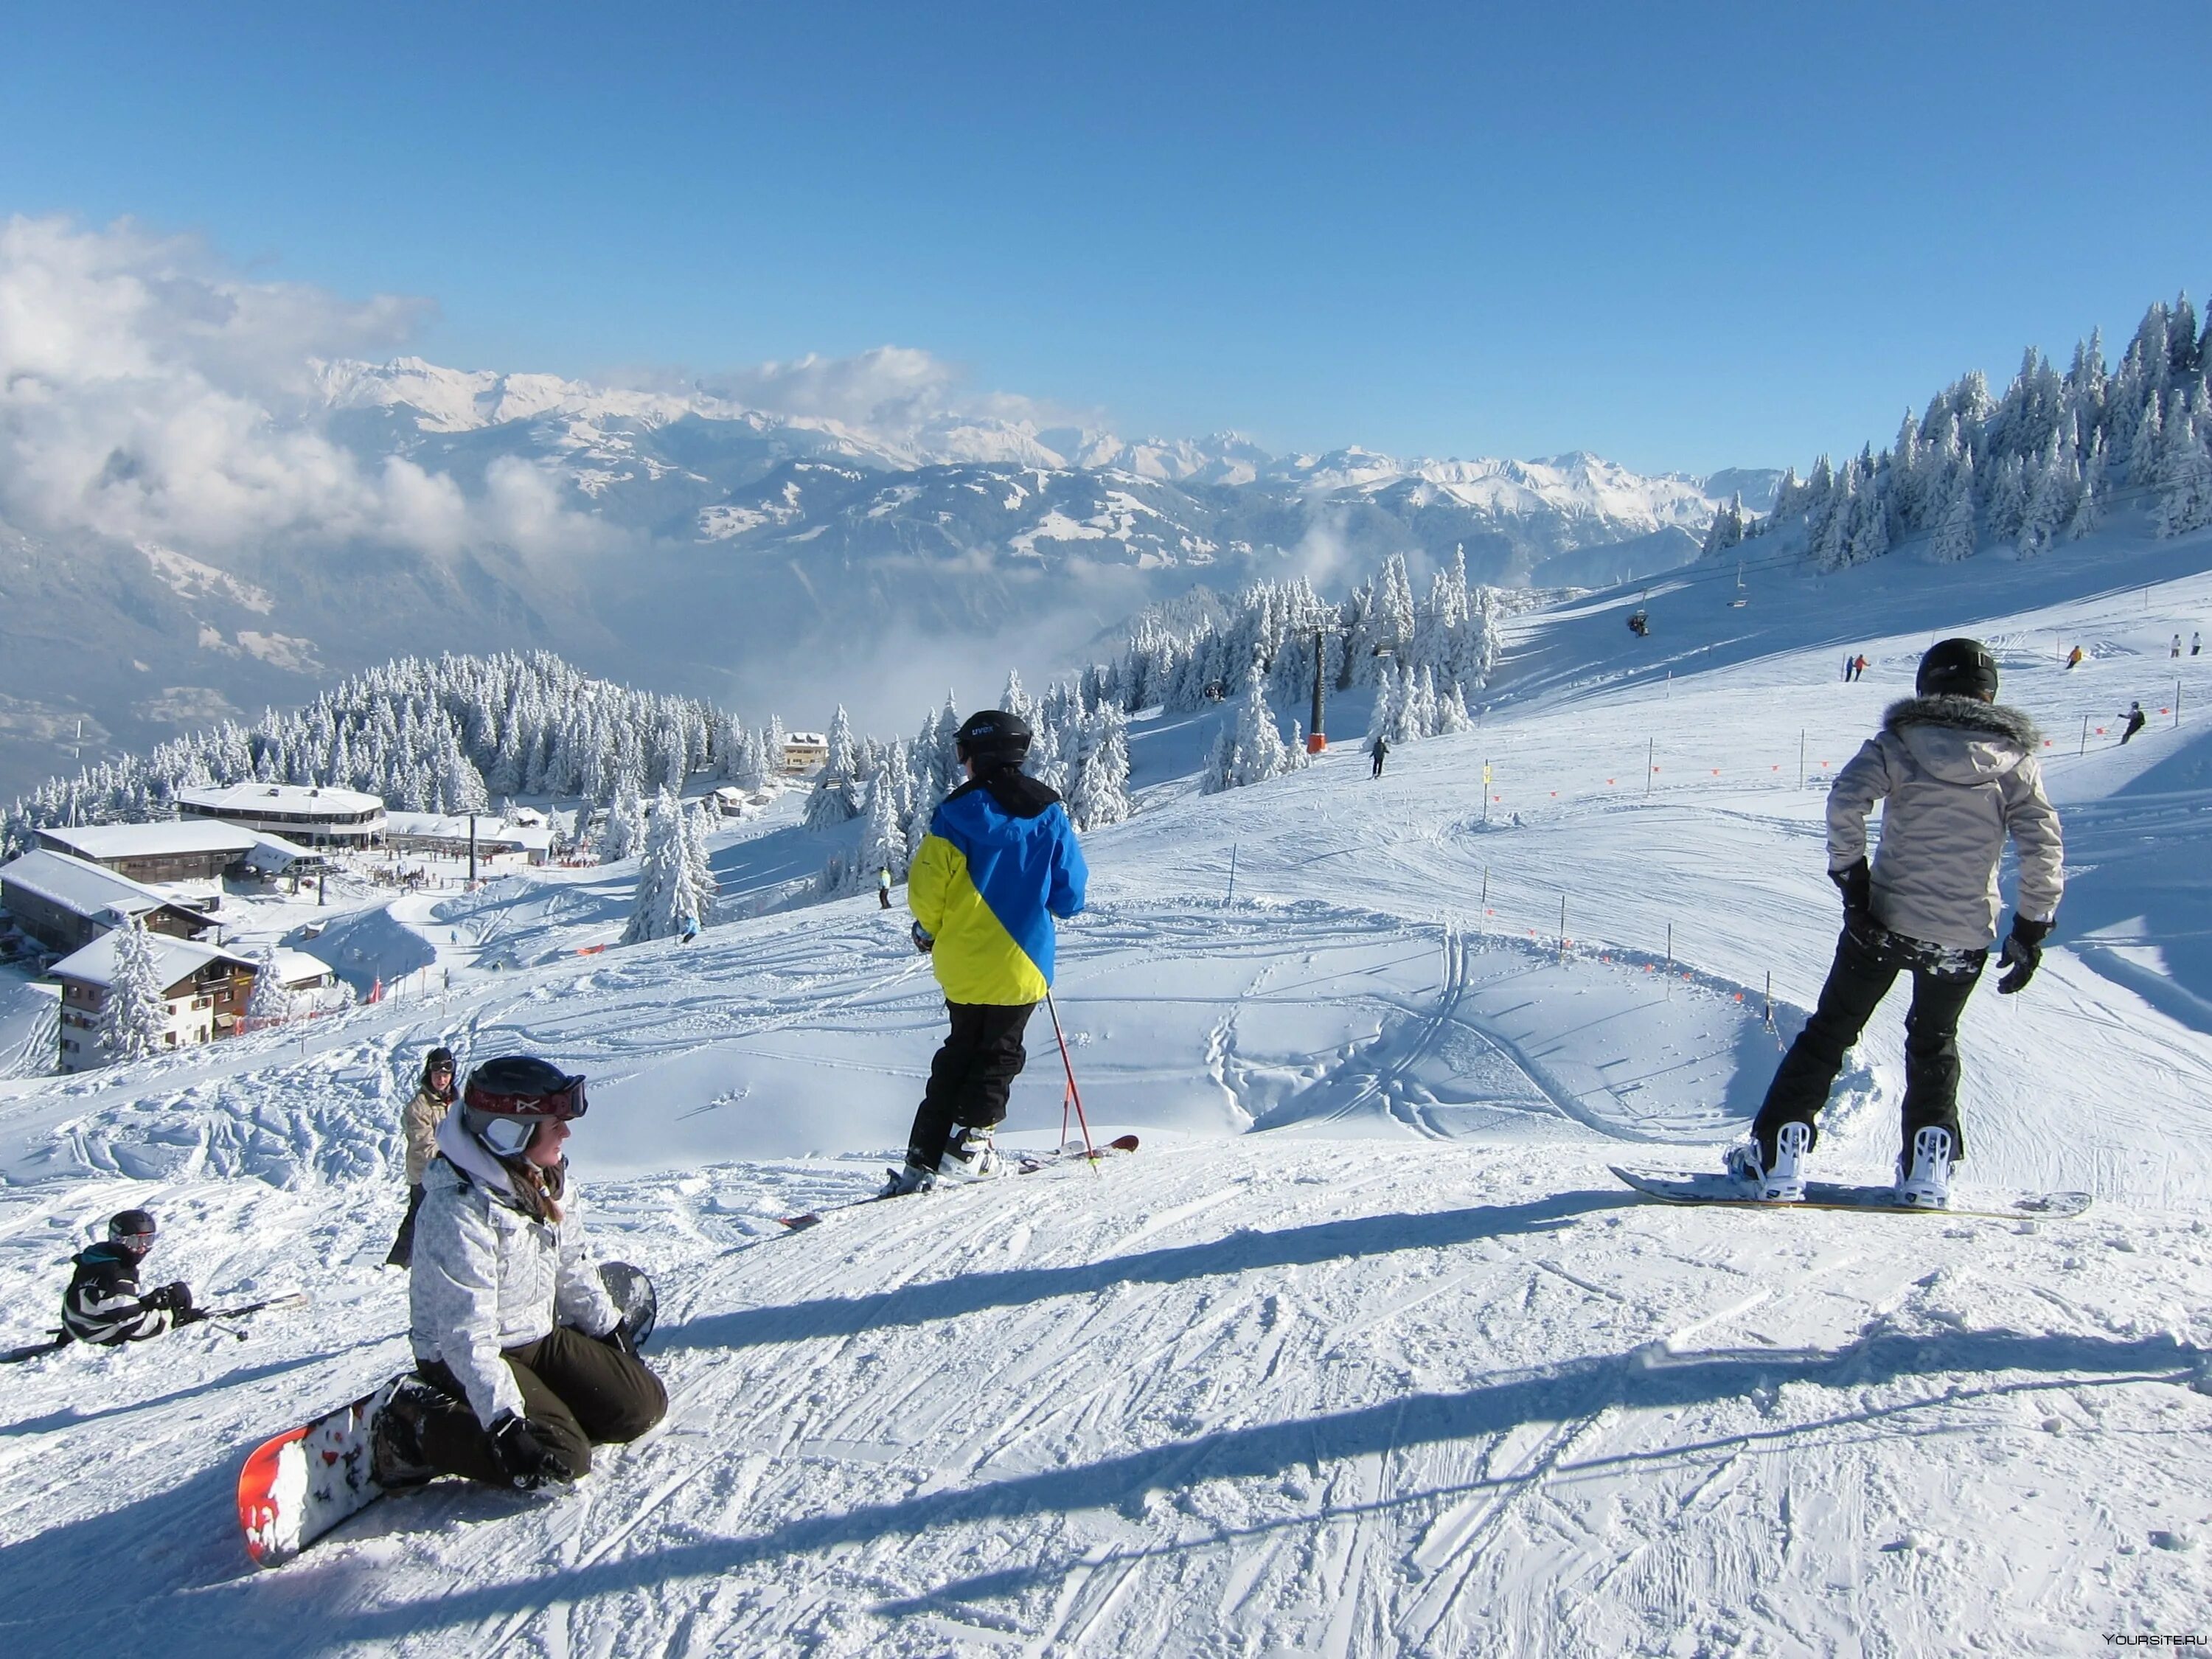 Вакансии горнолыжный курорт. Курорт в швейцарском кантоне Вале. Горнолыжка в Швейцарии. Лыжный курорт Монтана. Вербье Швейцария горнолыжный курорт.